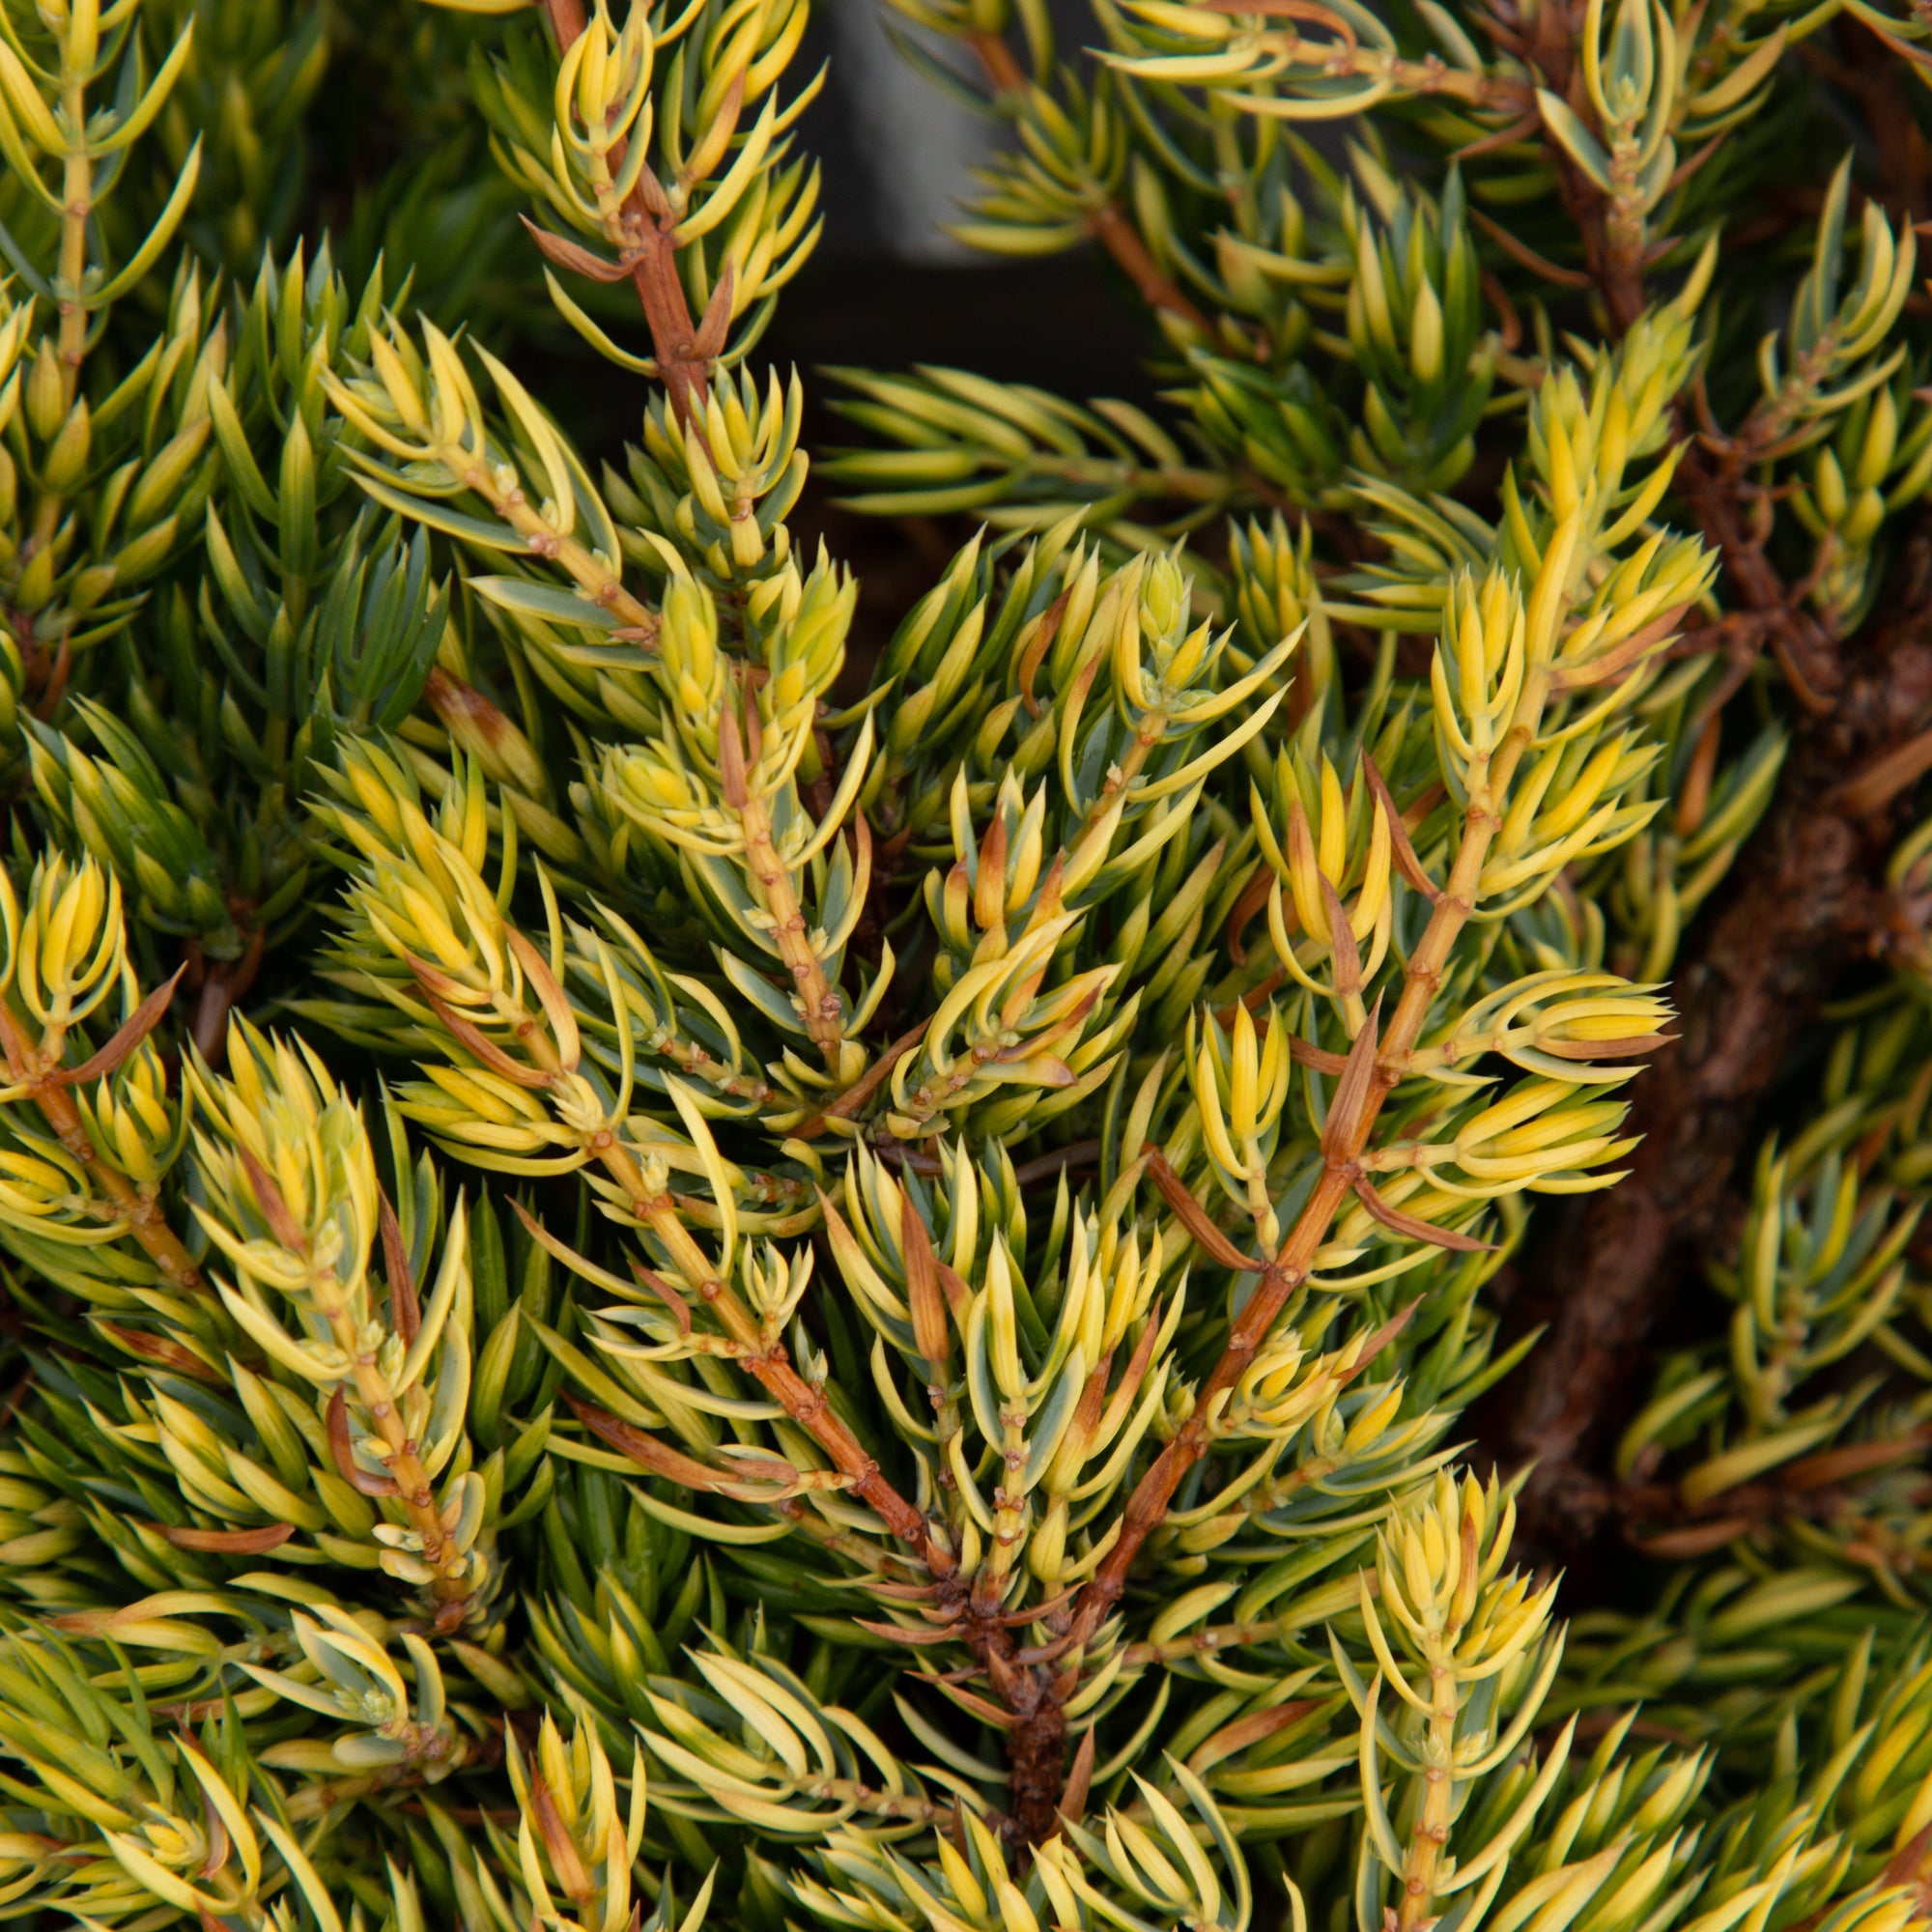 Juniperus communis GoldSchatz - Dwarf Gold Carpet Juniper